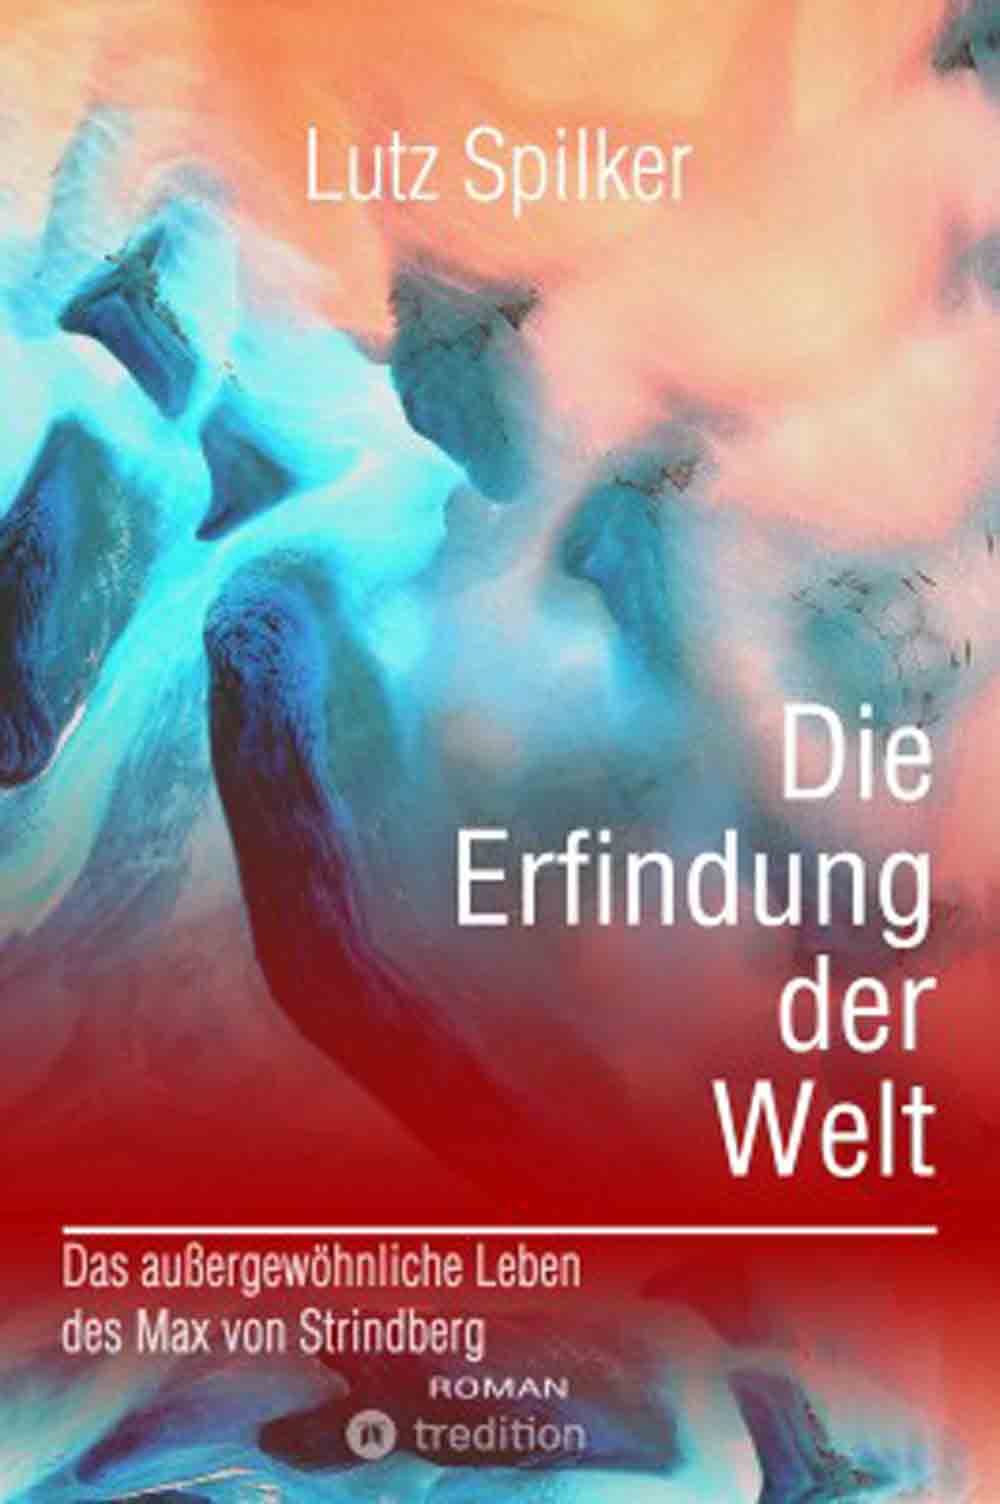 Lesetipps für Gütersloh, »Die Erfindung der Welt«, neues Buch von Lutz Spilker über das außergewöhnliche Leben des Max von Strindberg